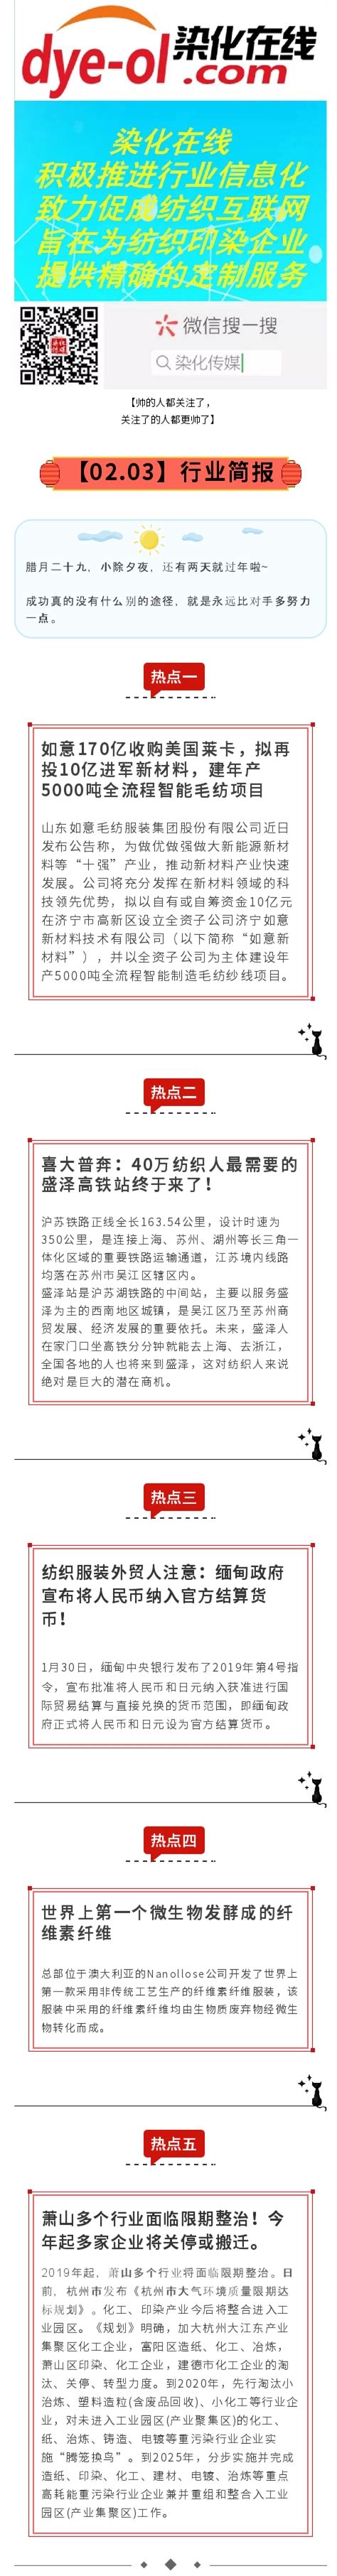 杭州日报报业集团盛元印务有限公司 - 爱企查